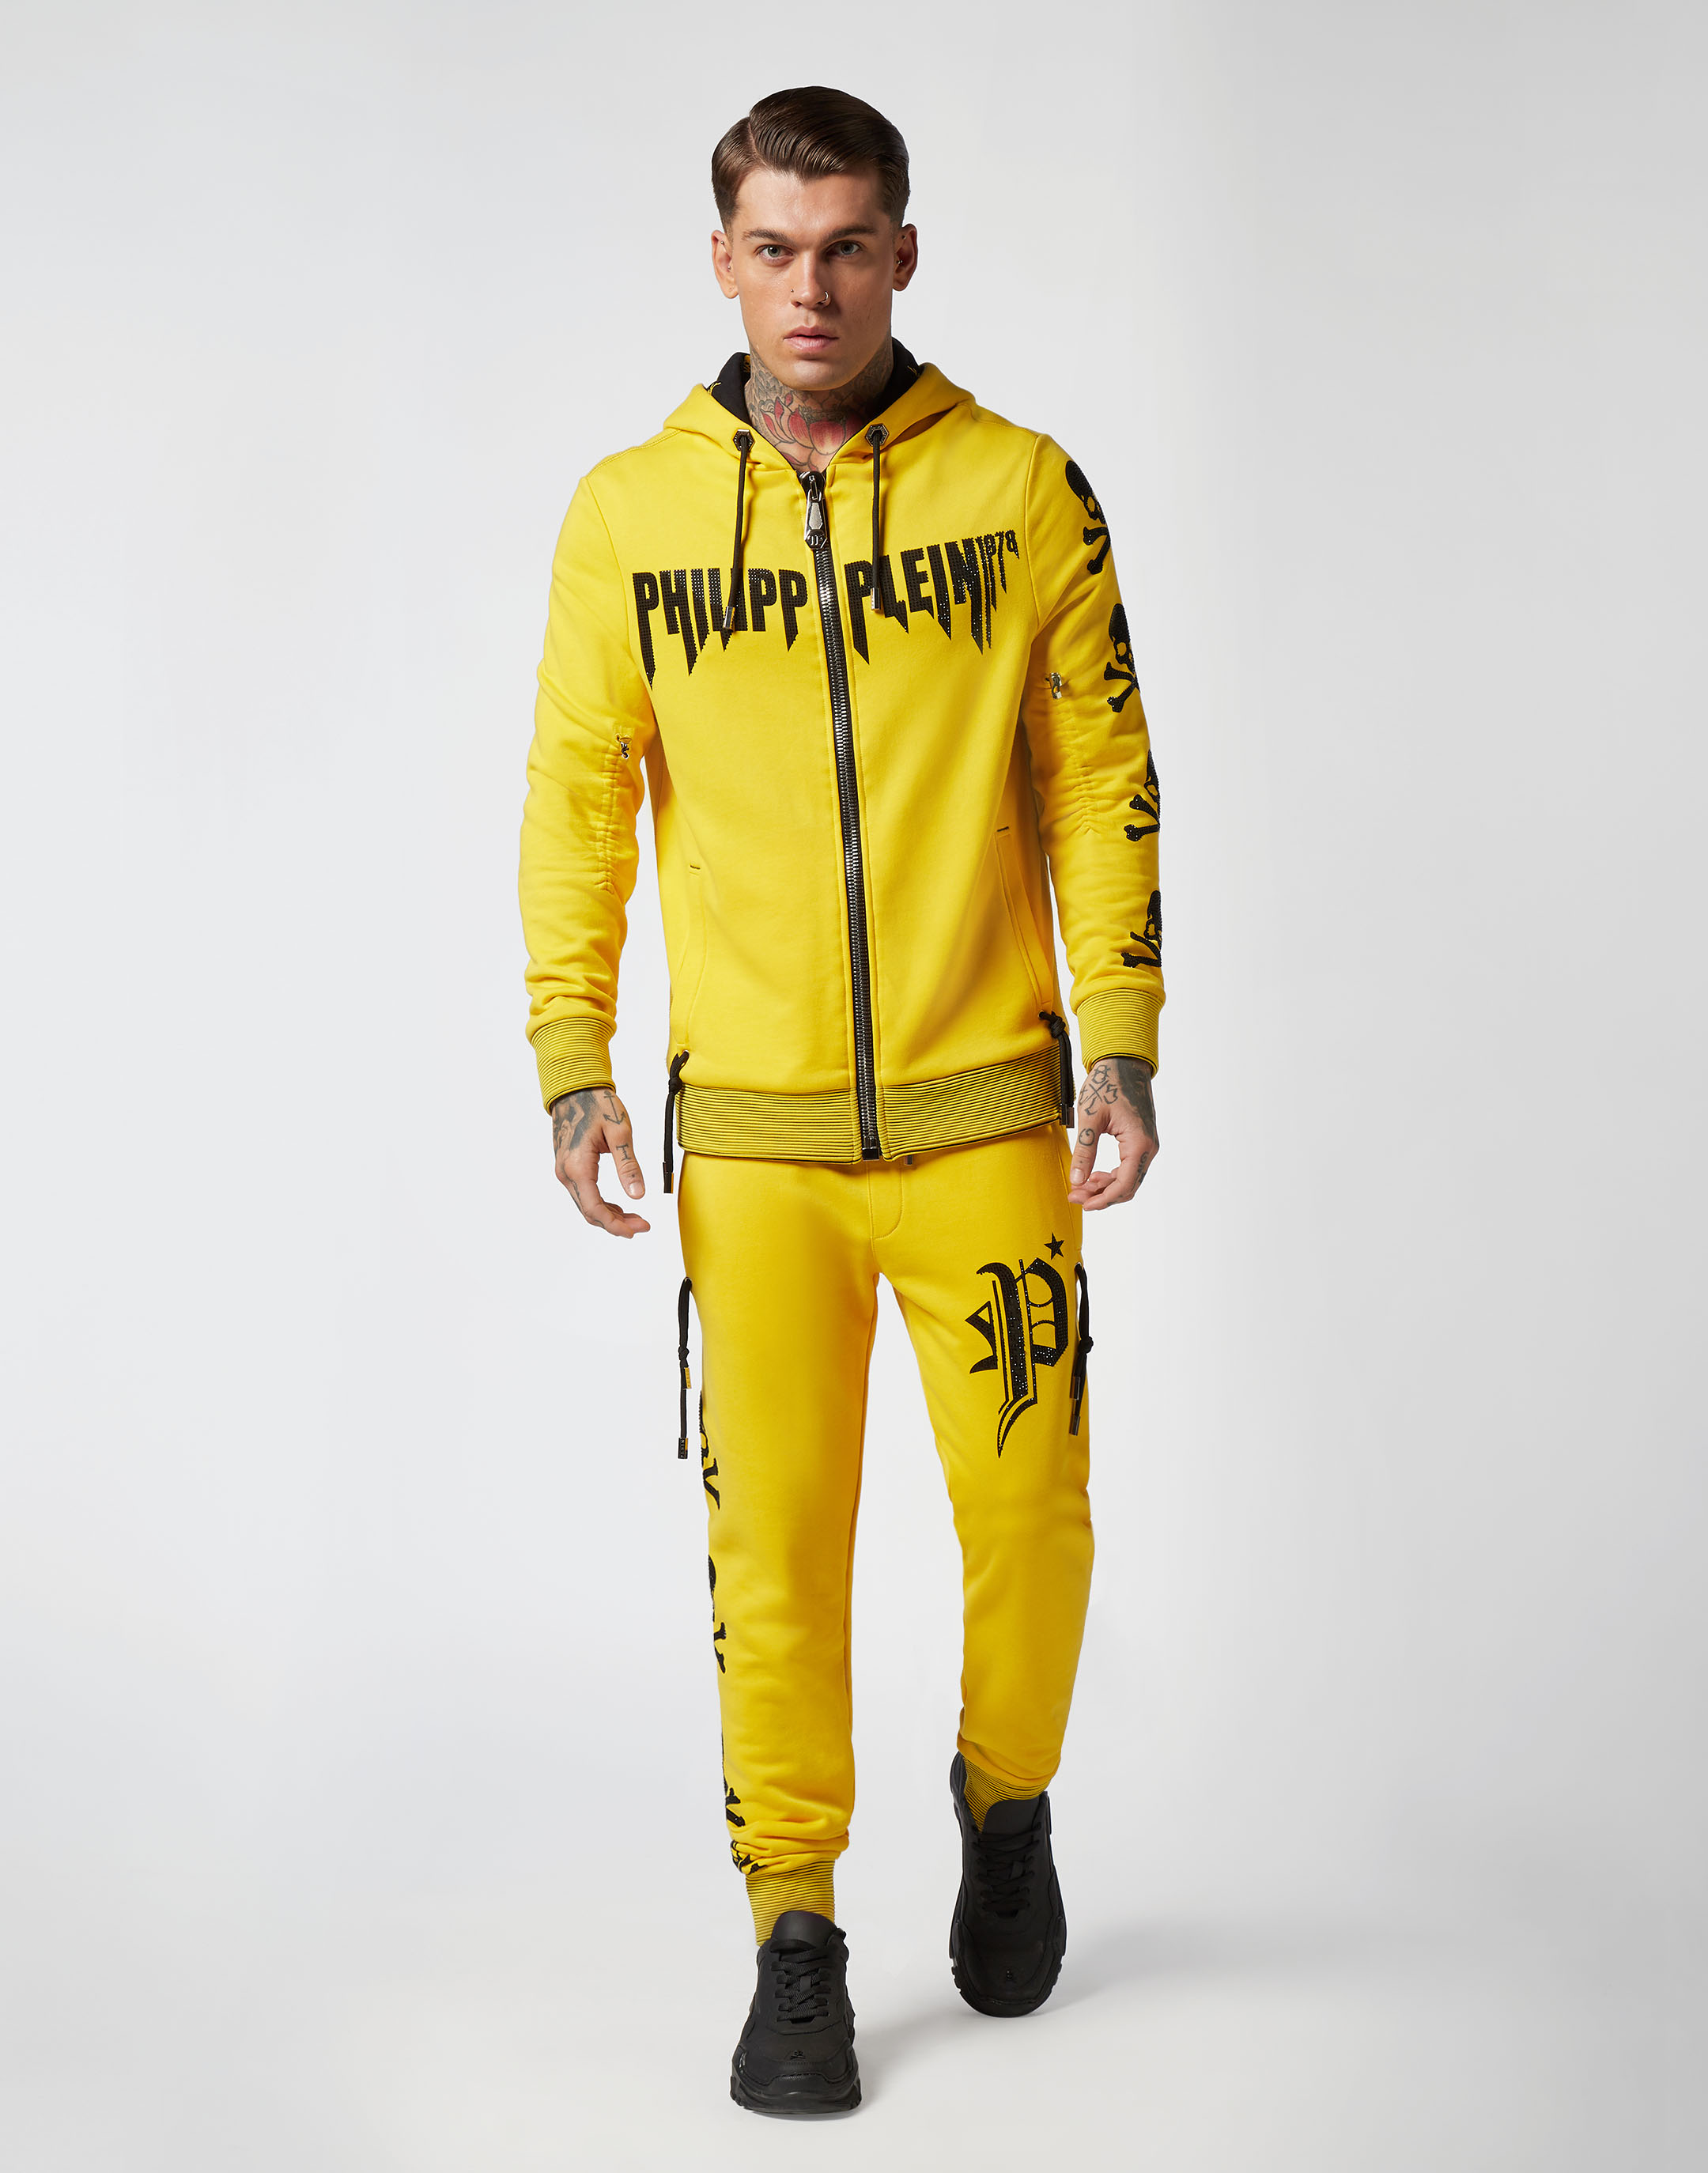 philipp plein yellow hoodie